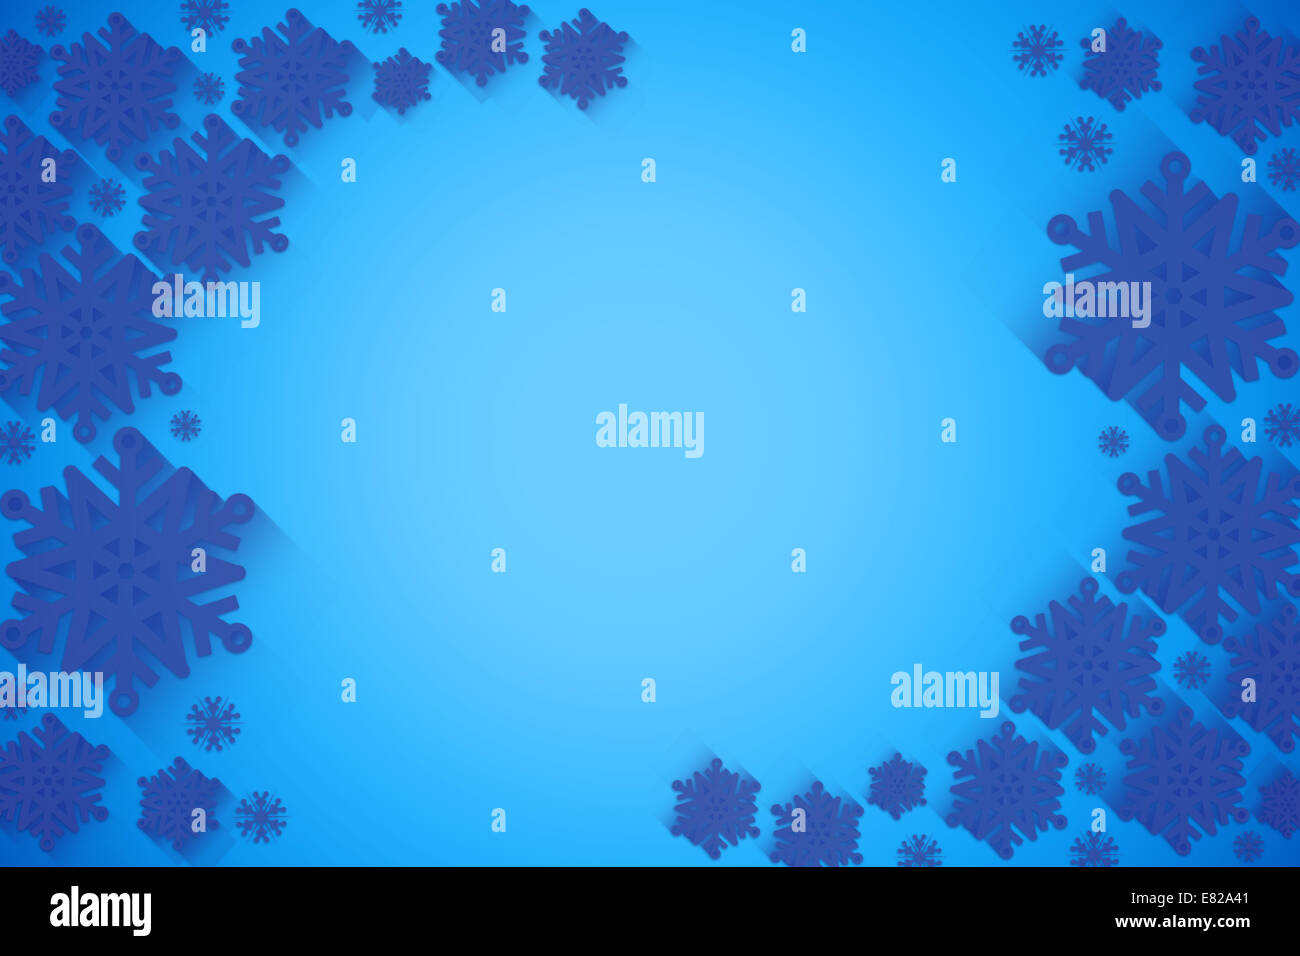 Blue snowflake frame pattern design Banque D'Images